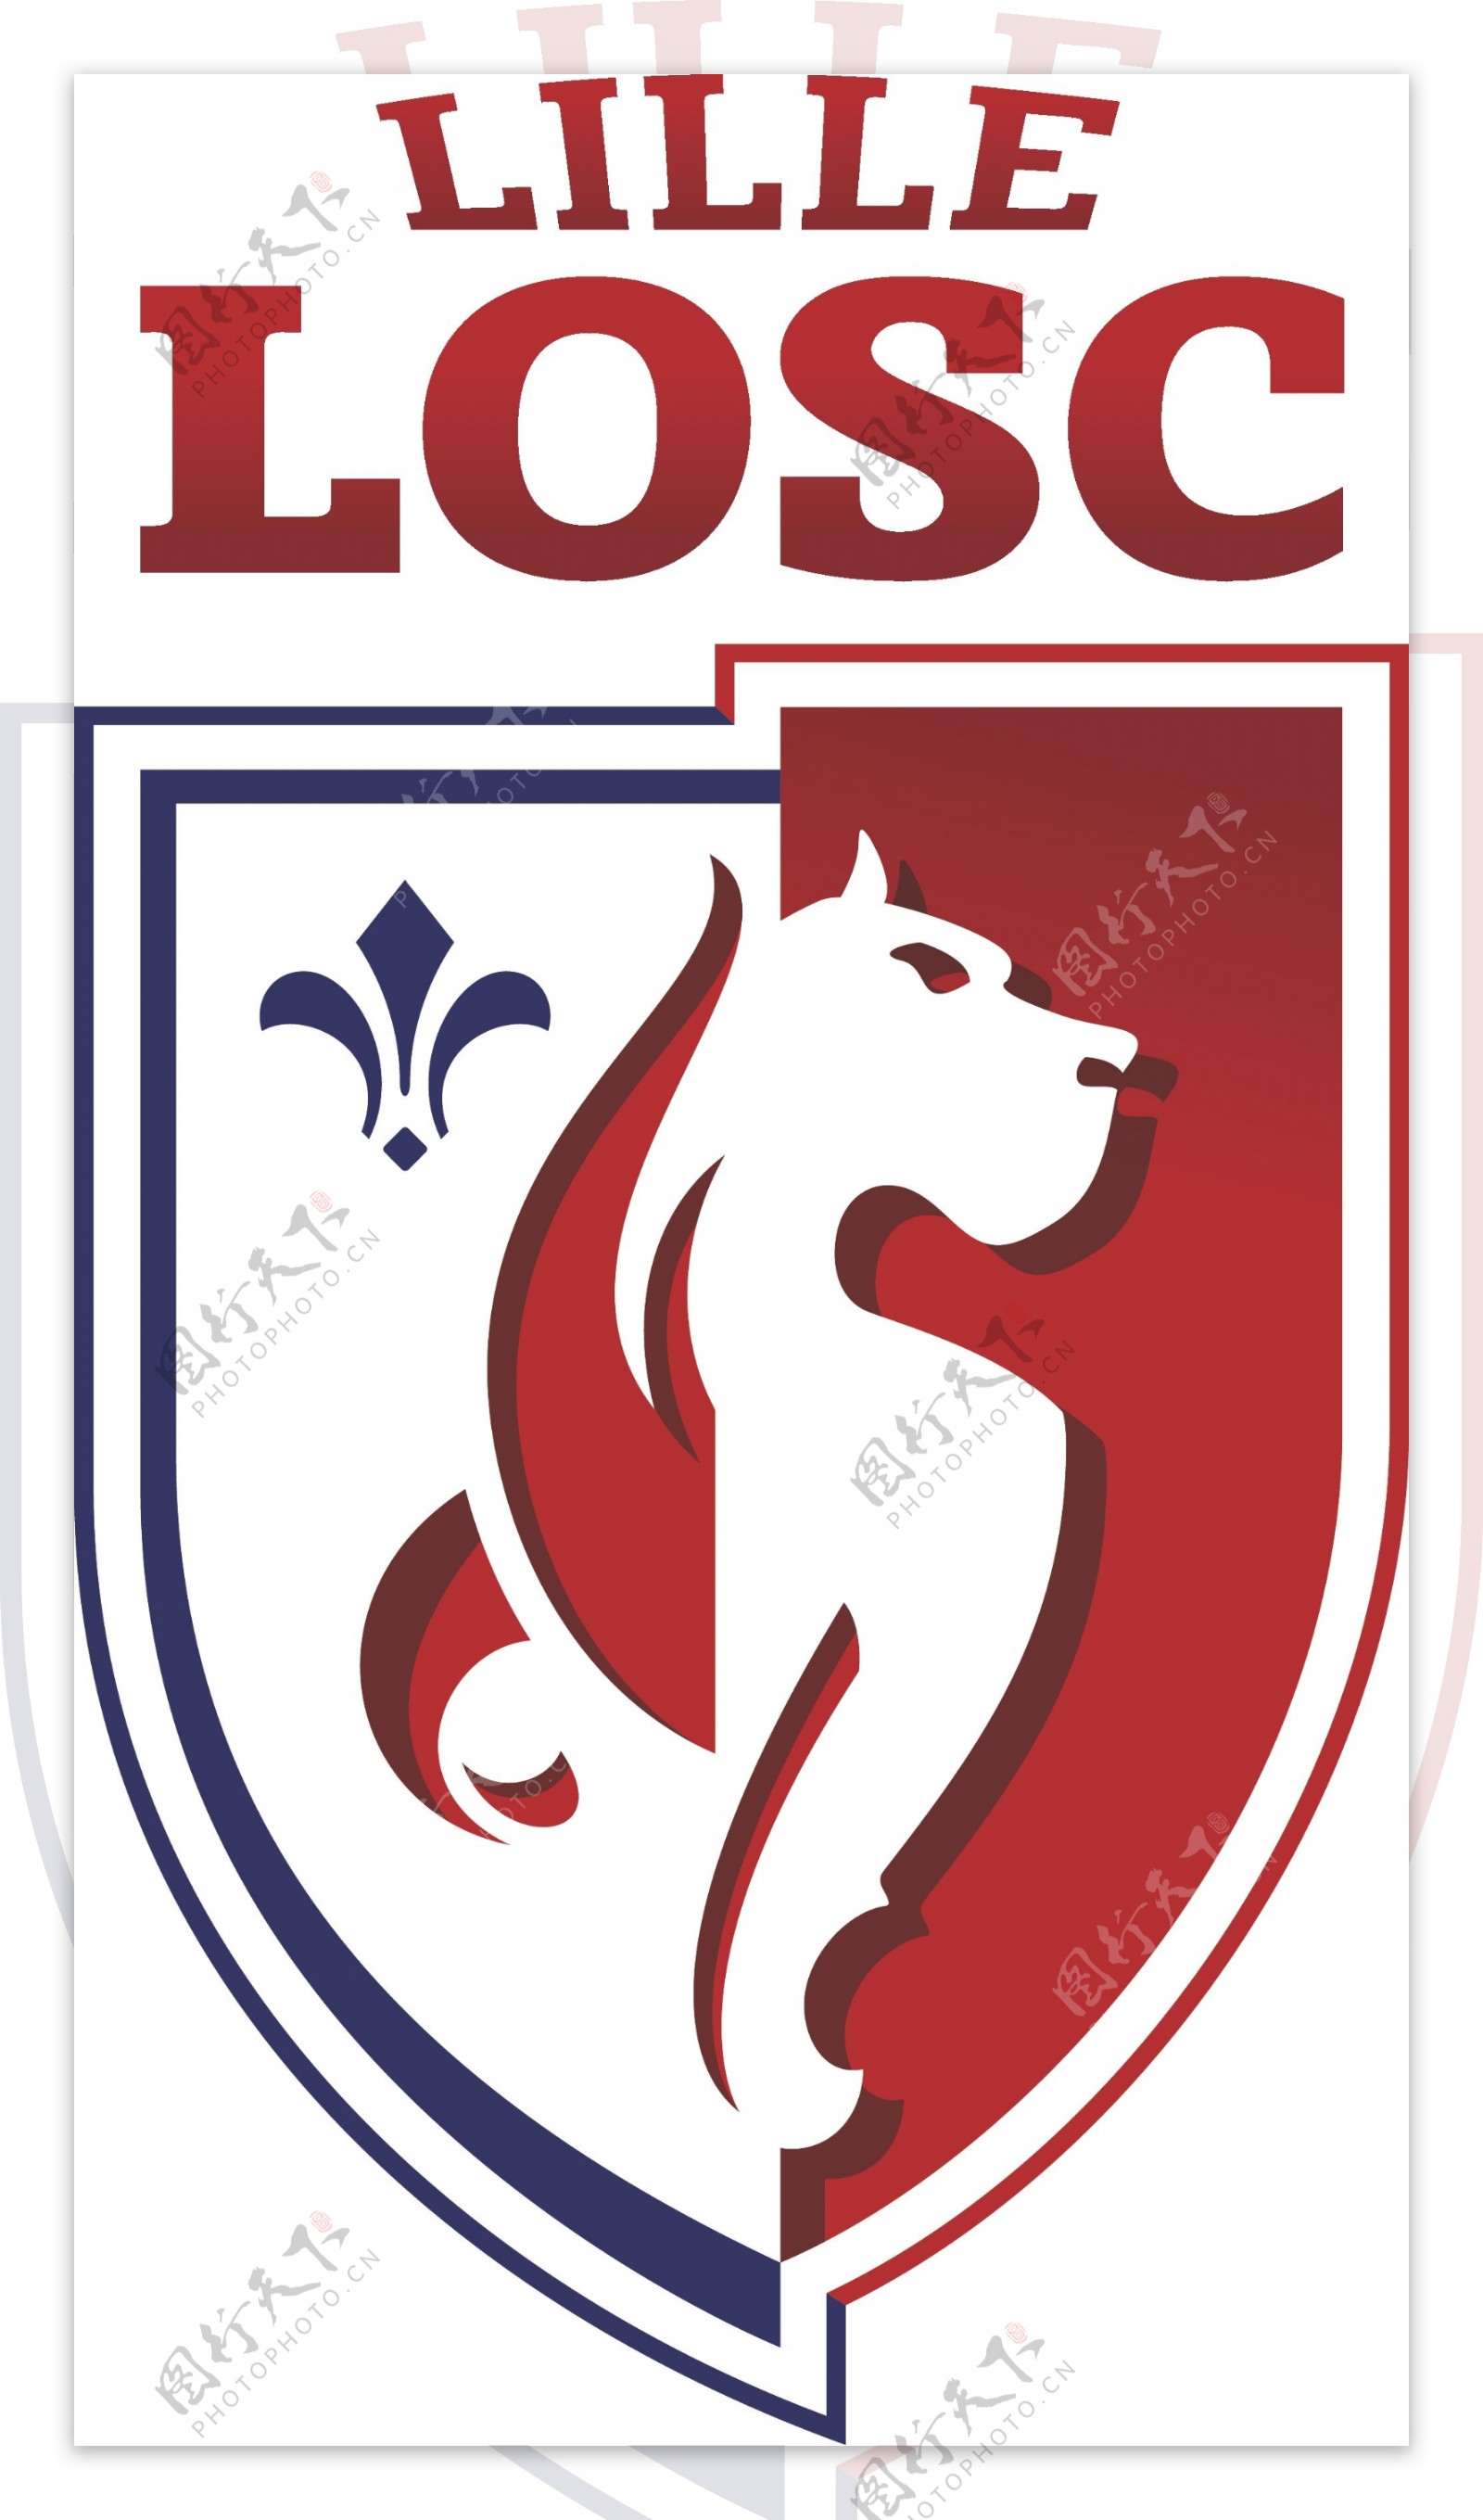 里尔足球俱乐部徽标图片